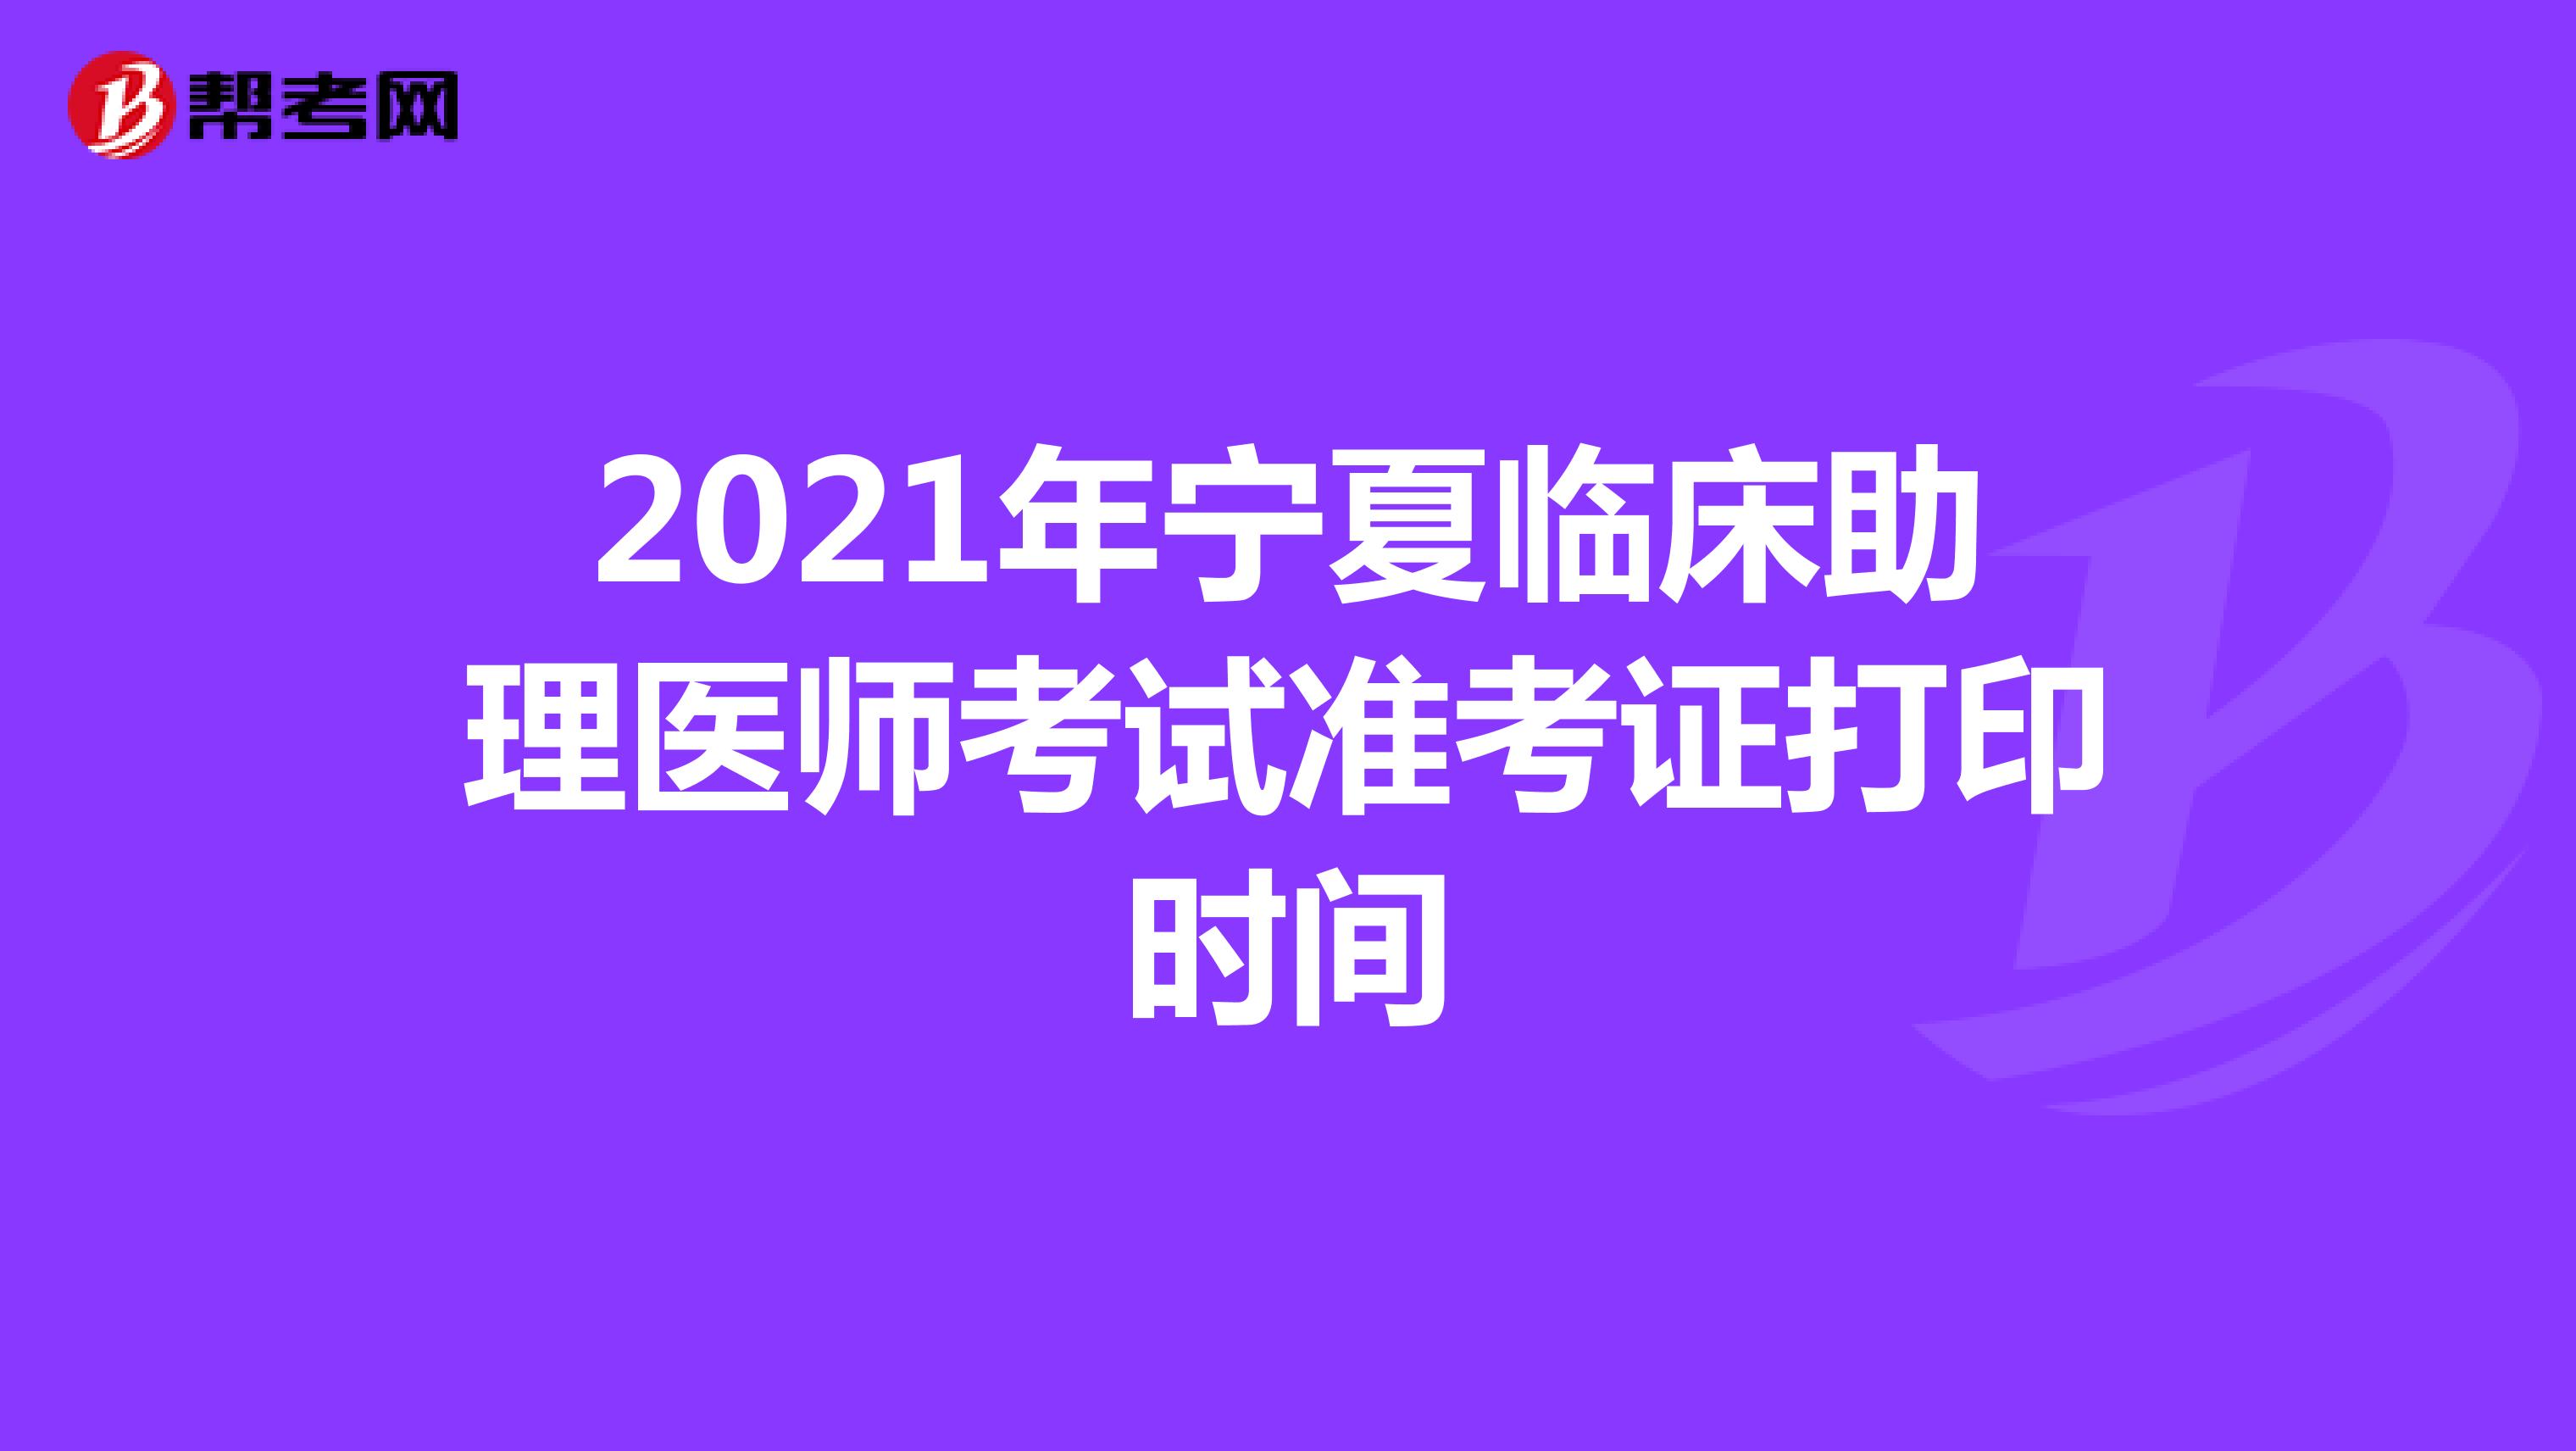 2021年宁夏临床助理医师考试准考证打印时间